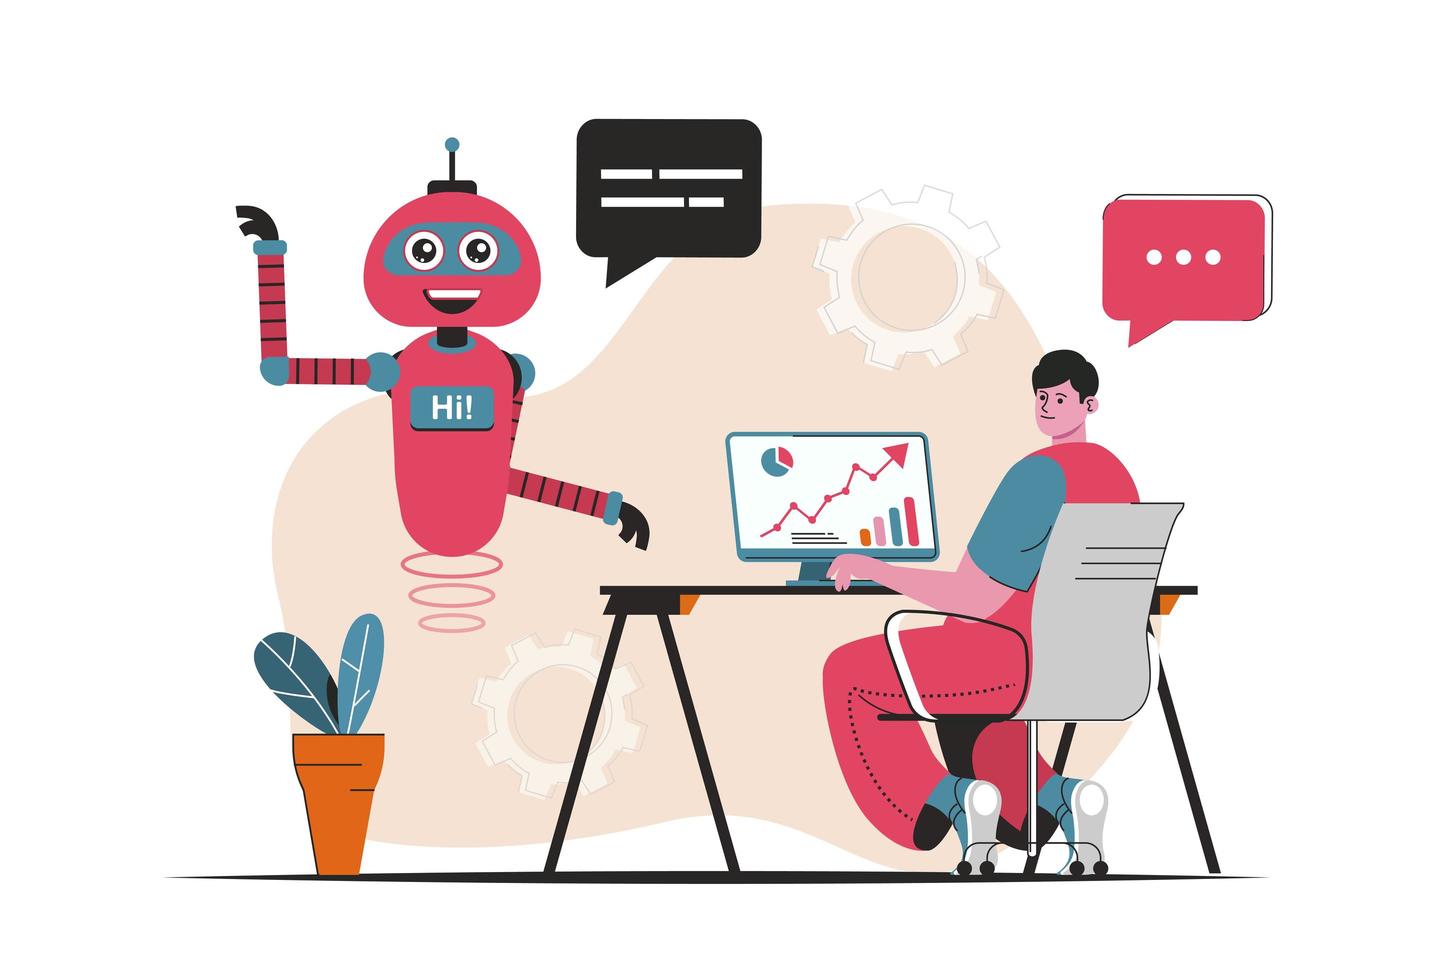 concetto di assistente virtuale isolato. assistenza clienti da parte di robot robot nelle chat online. scena di persone nel design piatto del fumetto. illustrazione vettoriale per blog, sito Web, app mobile, materiali promozionali.